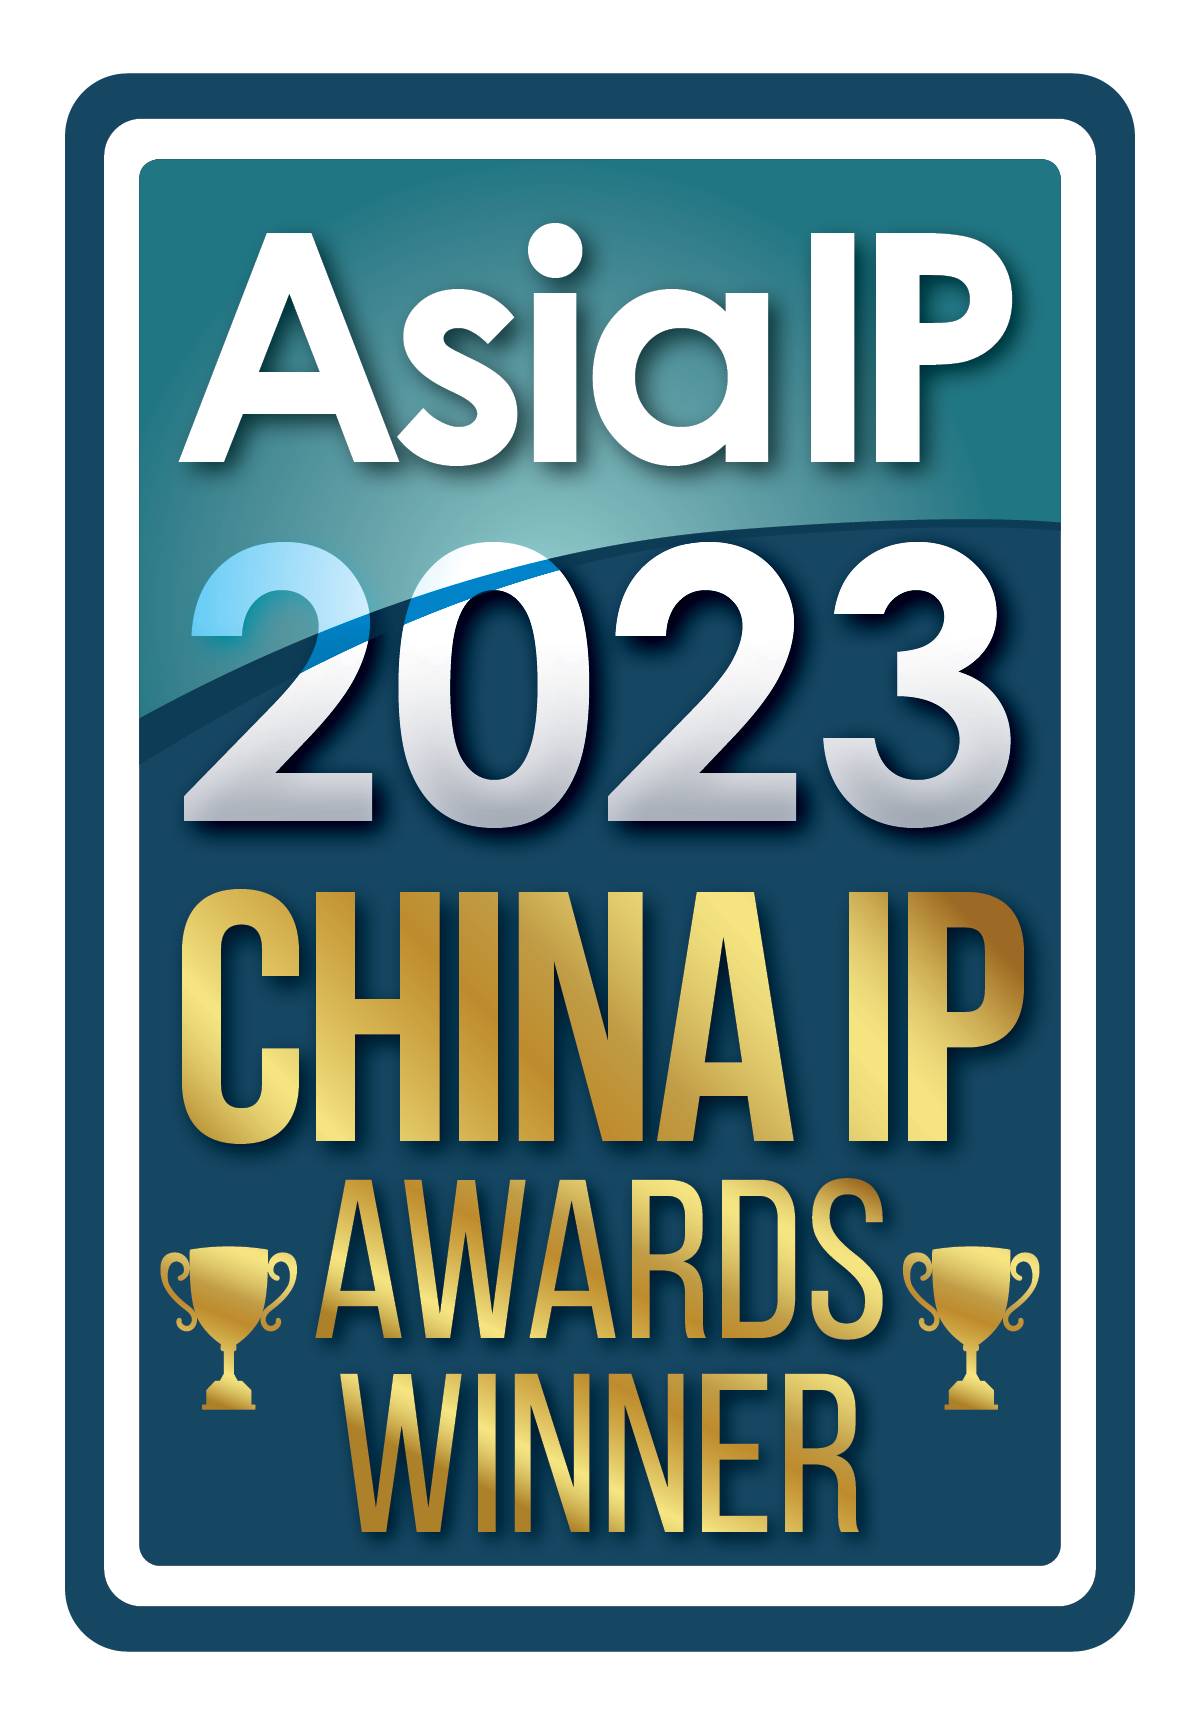 Asia IP 2023 China IP Awards Winner logo.png